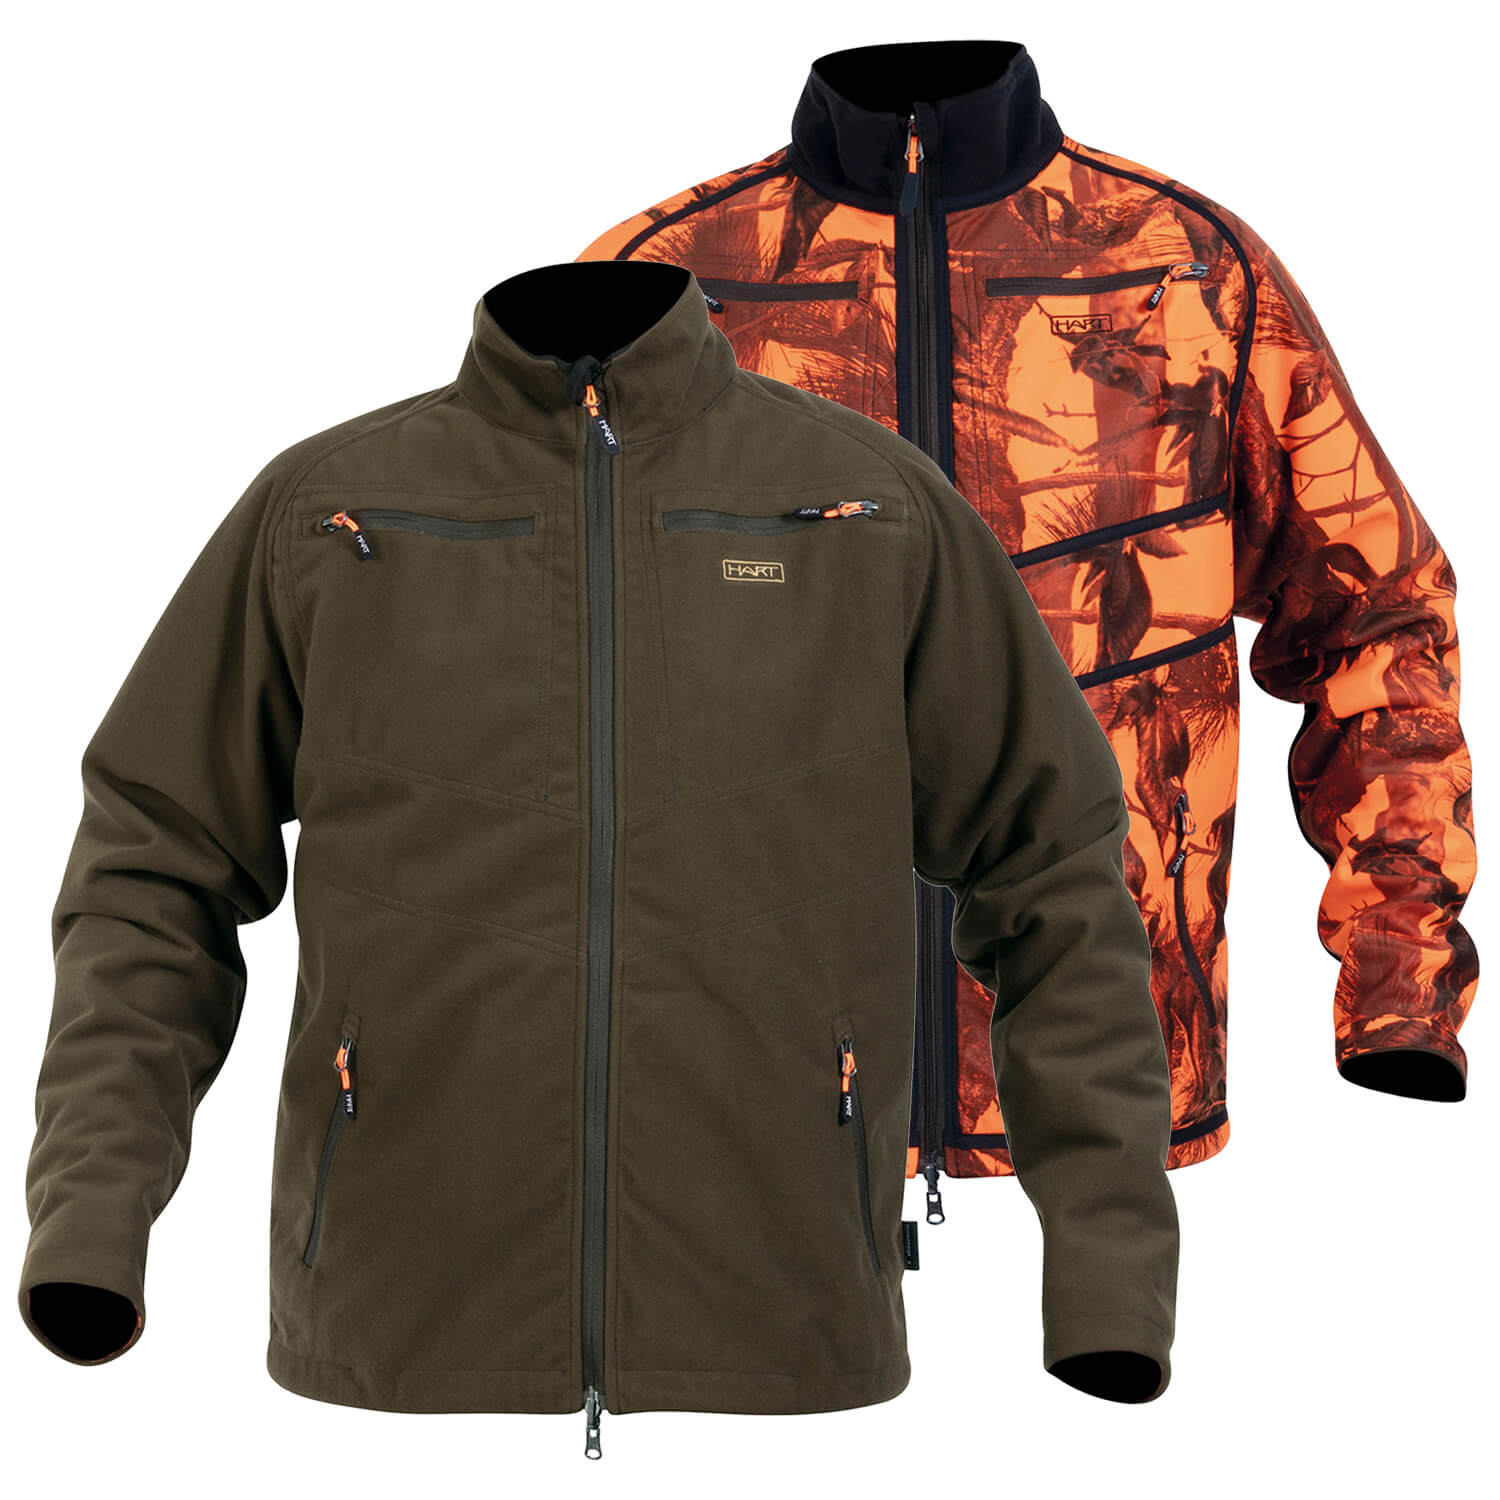 Hart reversible jacket Sosbun-O - Hunting Jackets